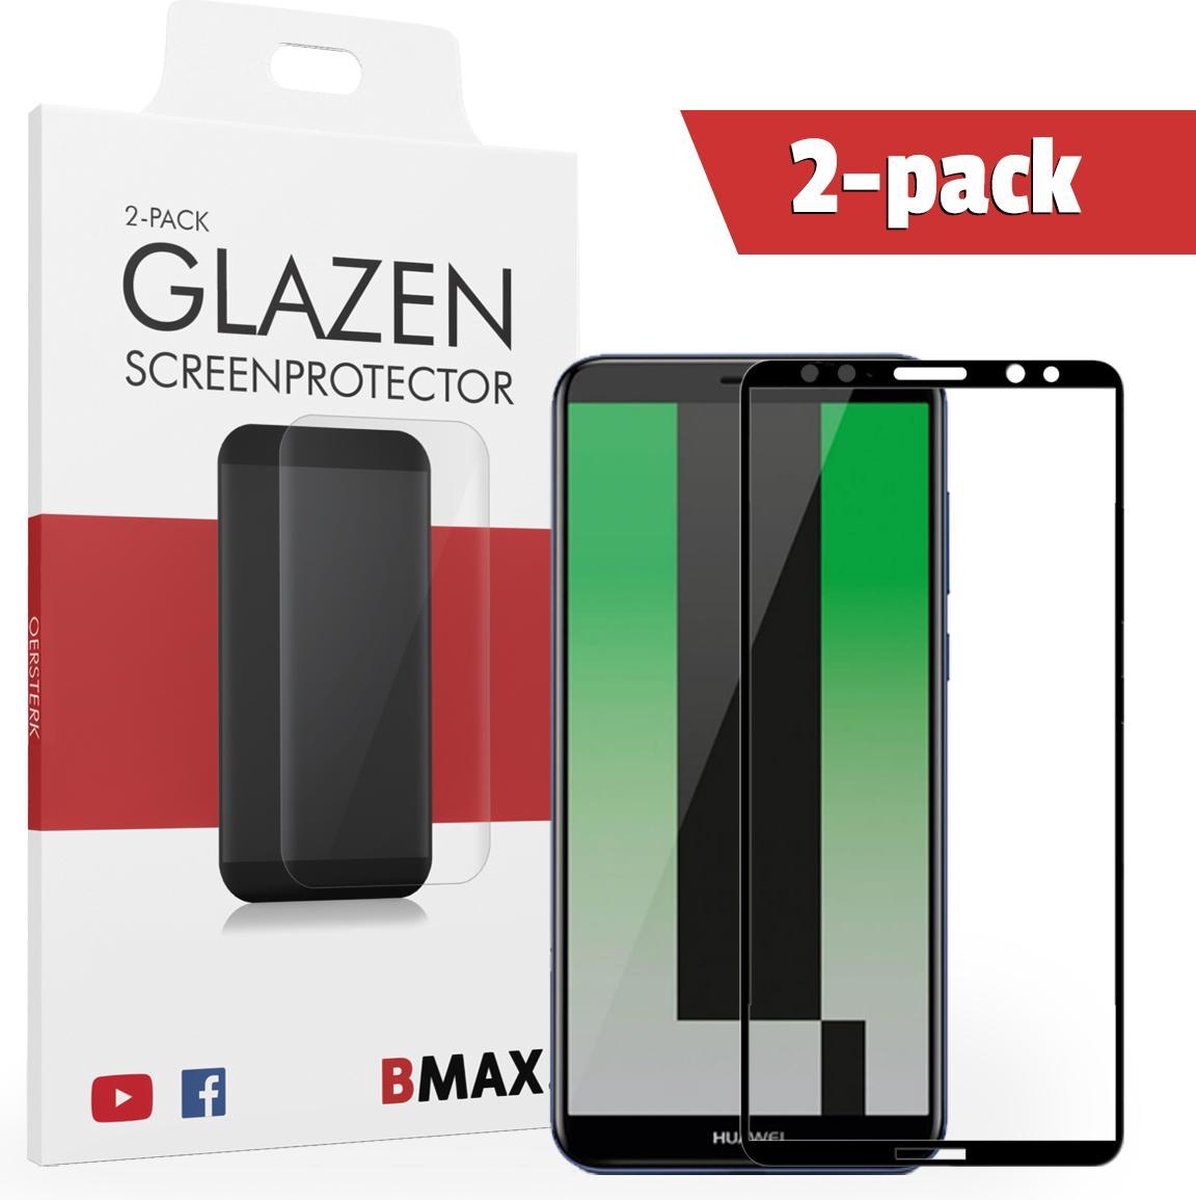 2-pack Bmax Huawei Mate 10 Lite Screenprotector - Glass - Full Cover 2.5d - Black